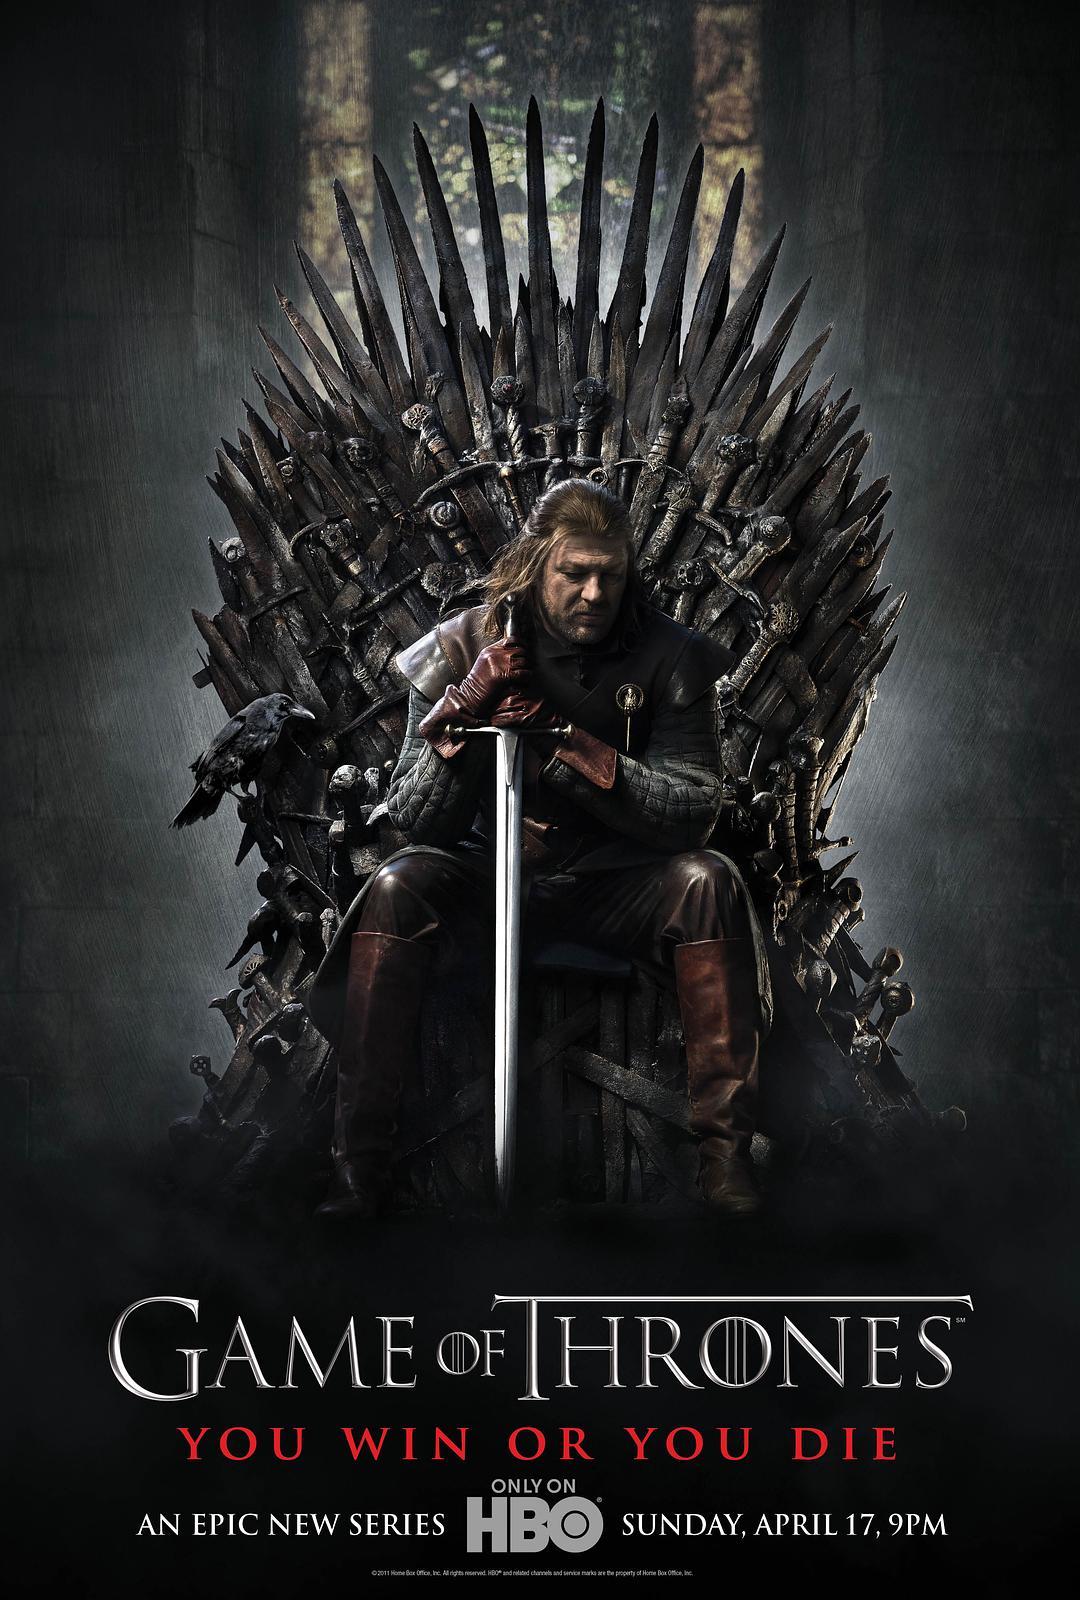 权利的游戏 第一季 Game.of.Thrones.S08.1080p.BluRay.AVC.TrueHD.7.1.Atmos-CHD 132.39GB-1.png